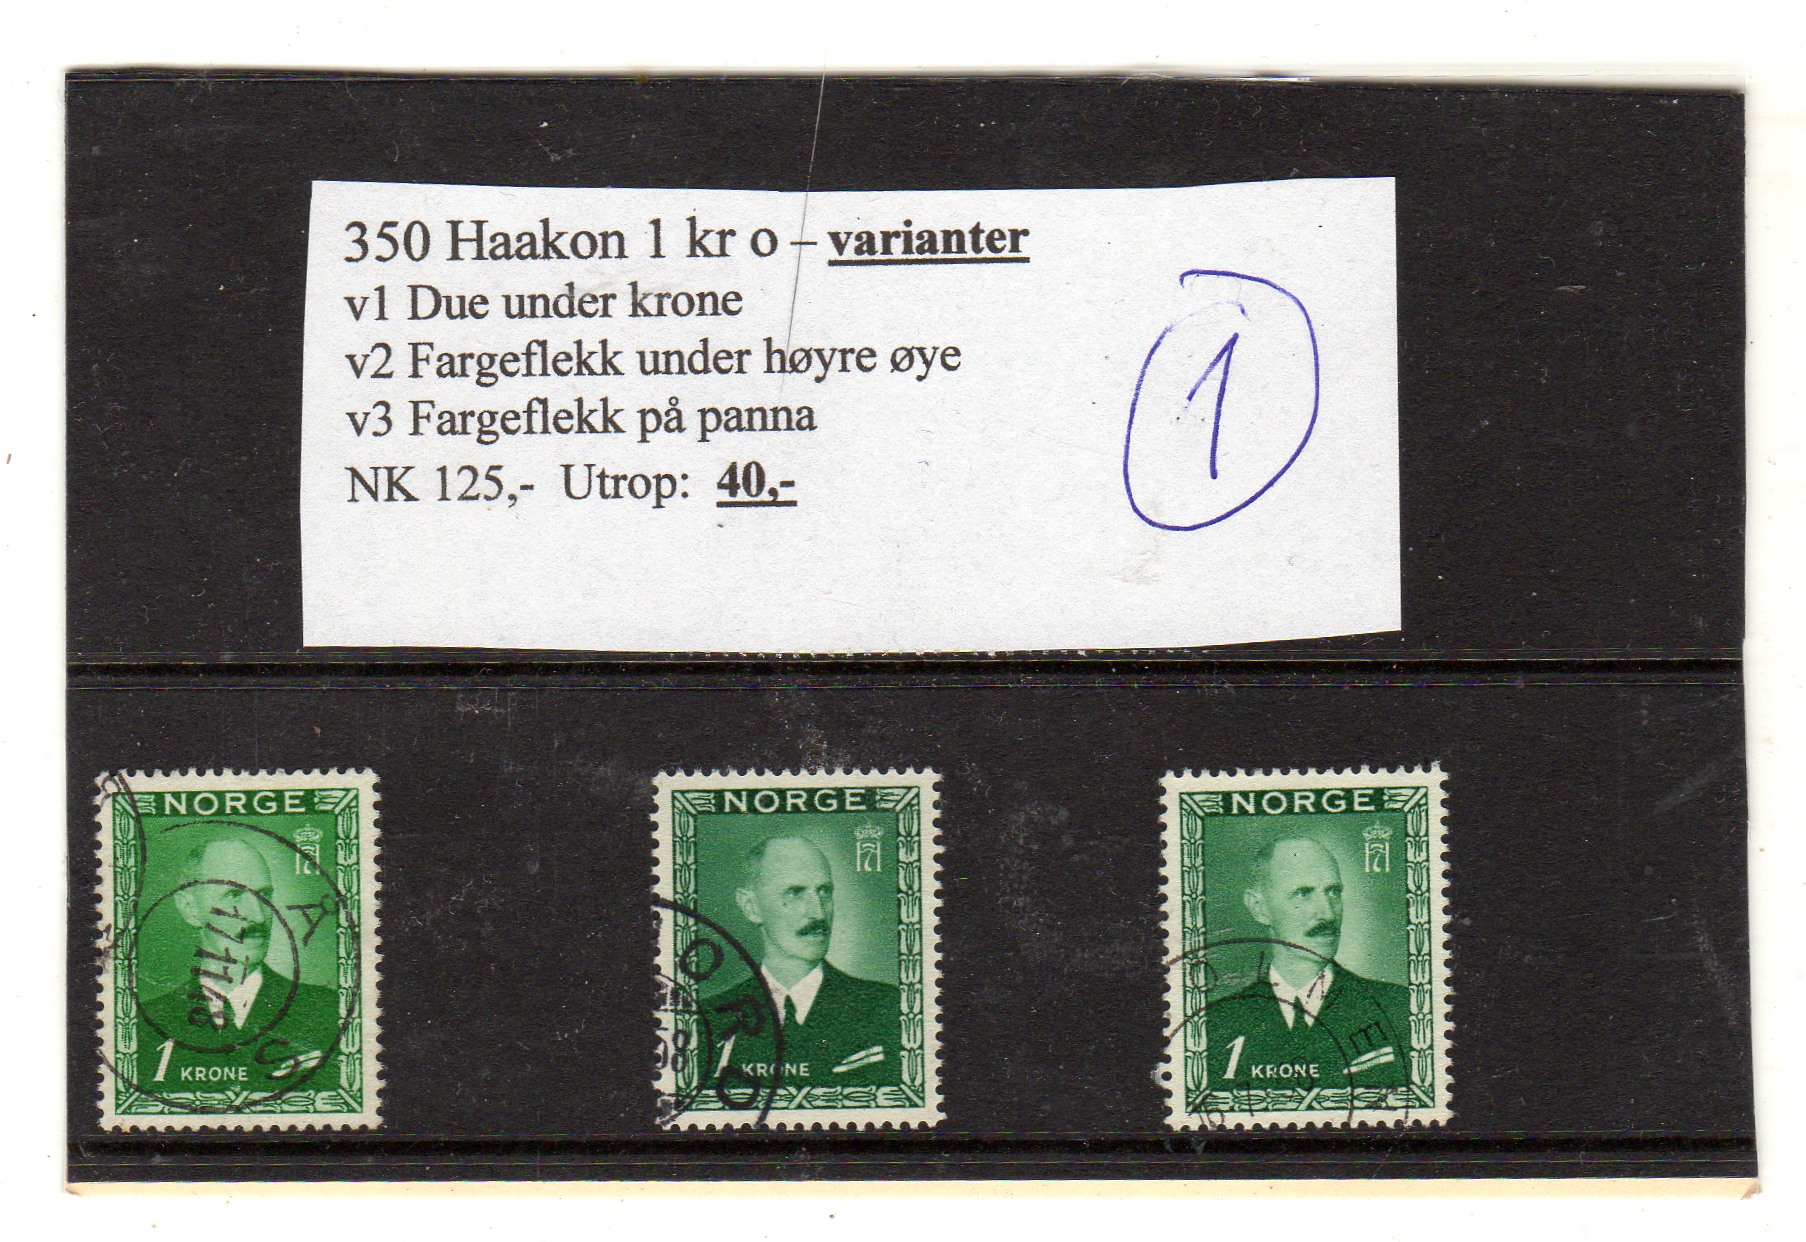 Hk 350 Haakon 1 kr o varianter Se bilde